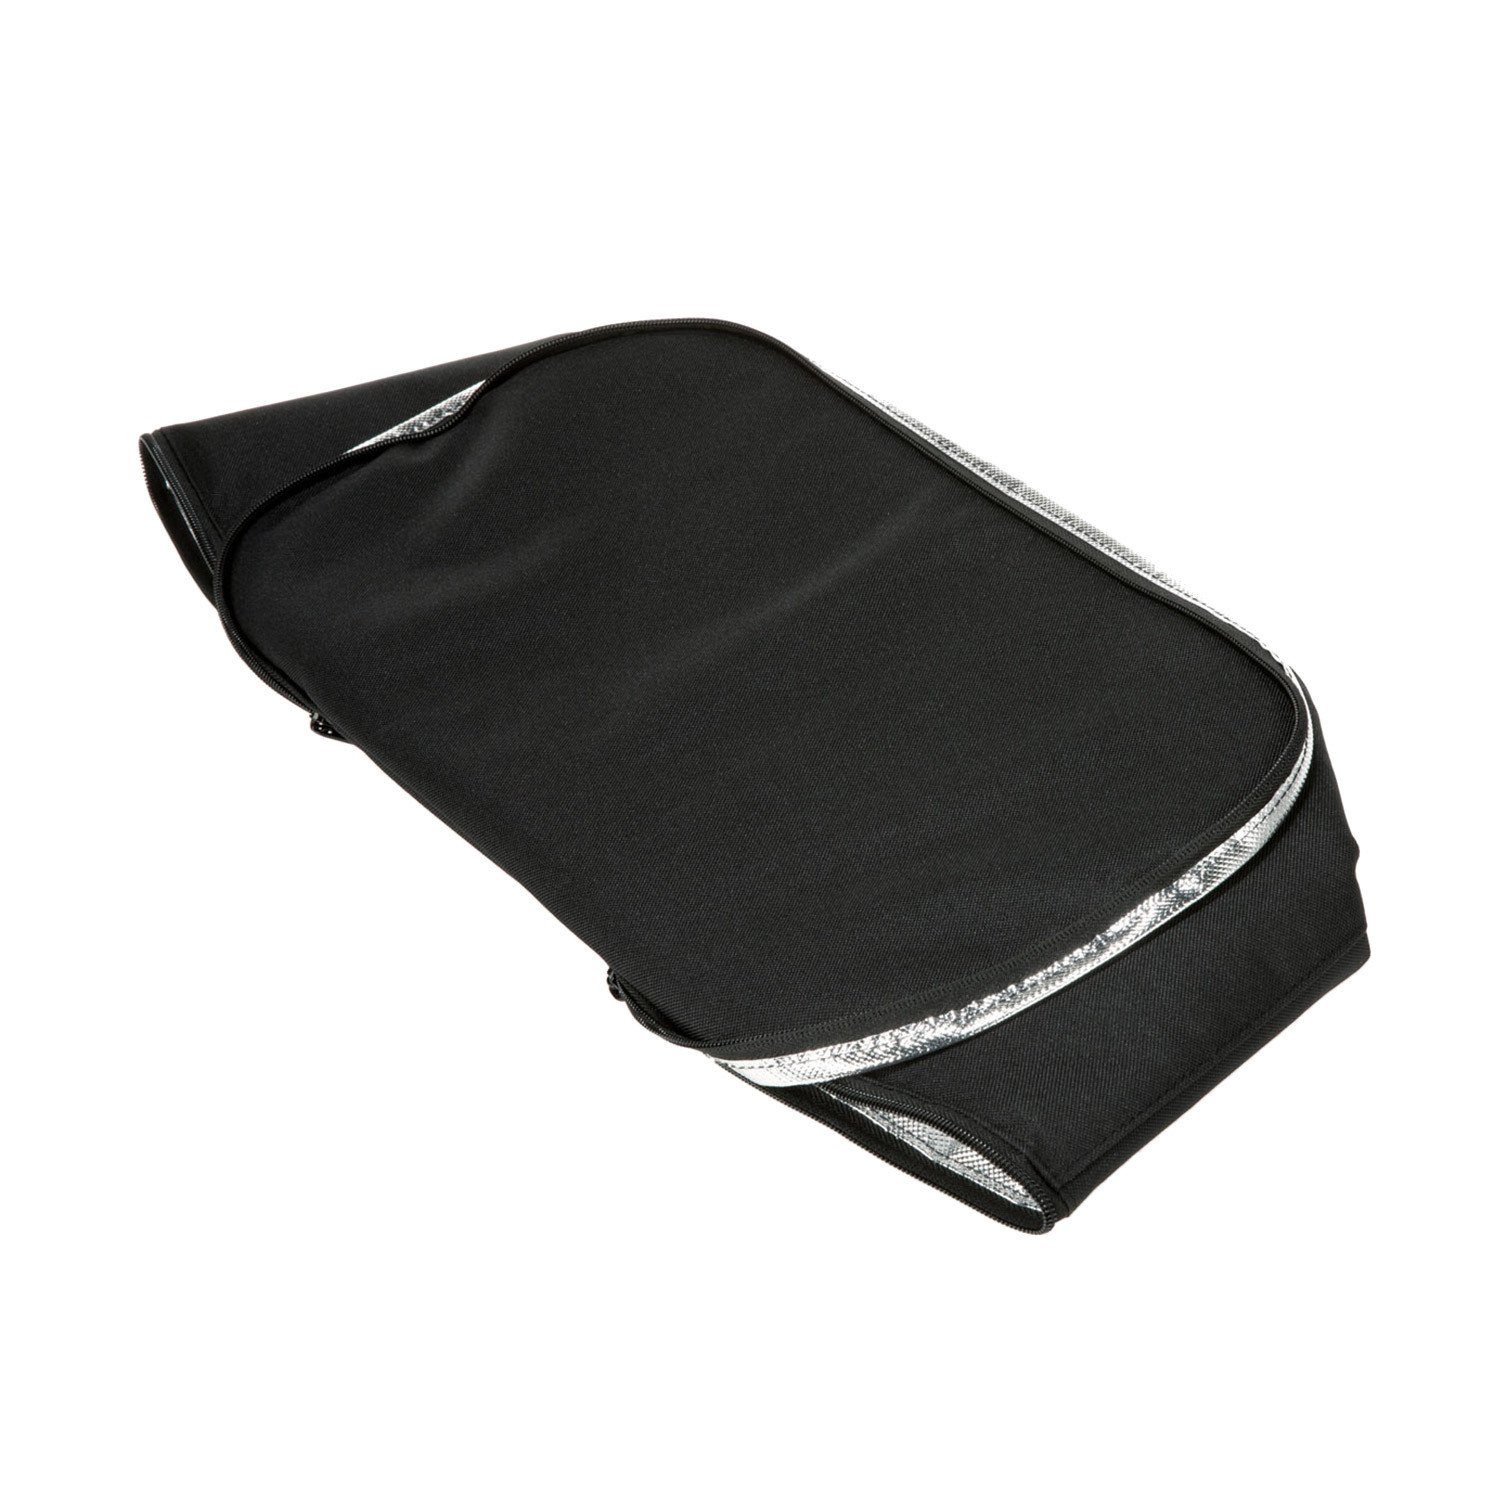 Dekor Picknickkorb Wahl REISENTHEL® - l Thermo schwarz Einkaufskorb coolerbag Kühltasche 20 zur Farbe